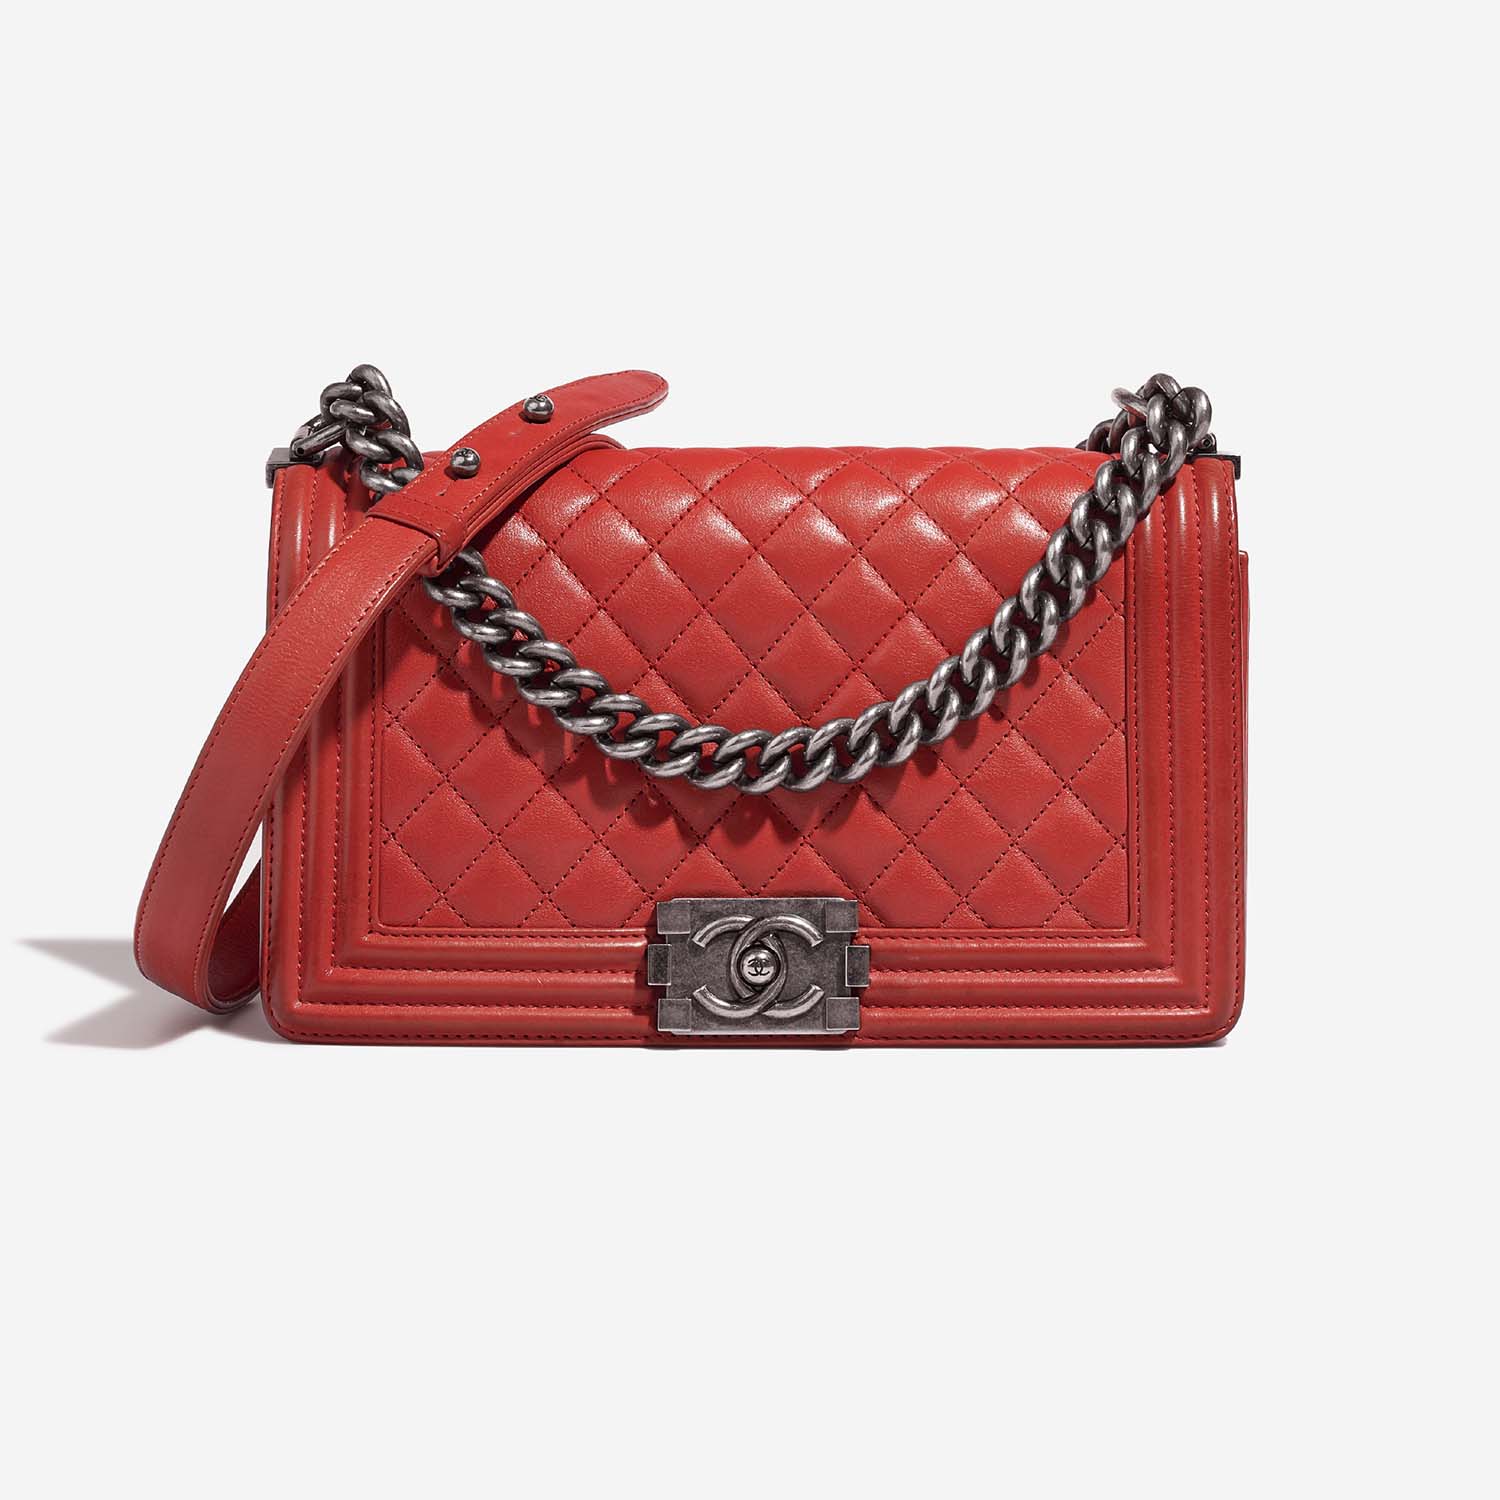 Chanel Boy OldMedium Red 2F S | Verkaufen Sie Ihre Designer-Tasche auf Saclab.com